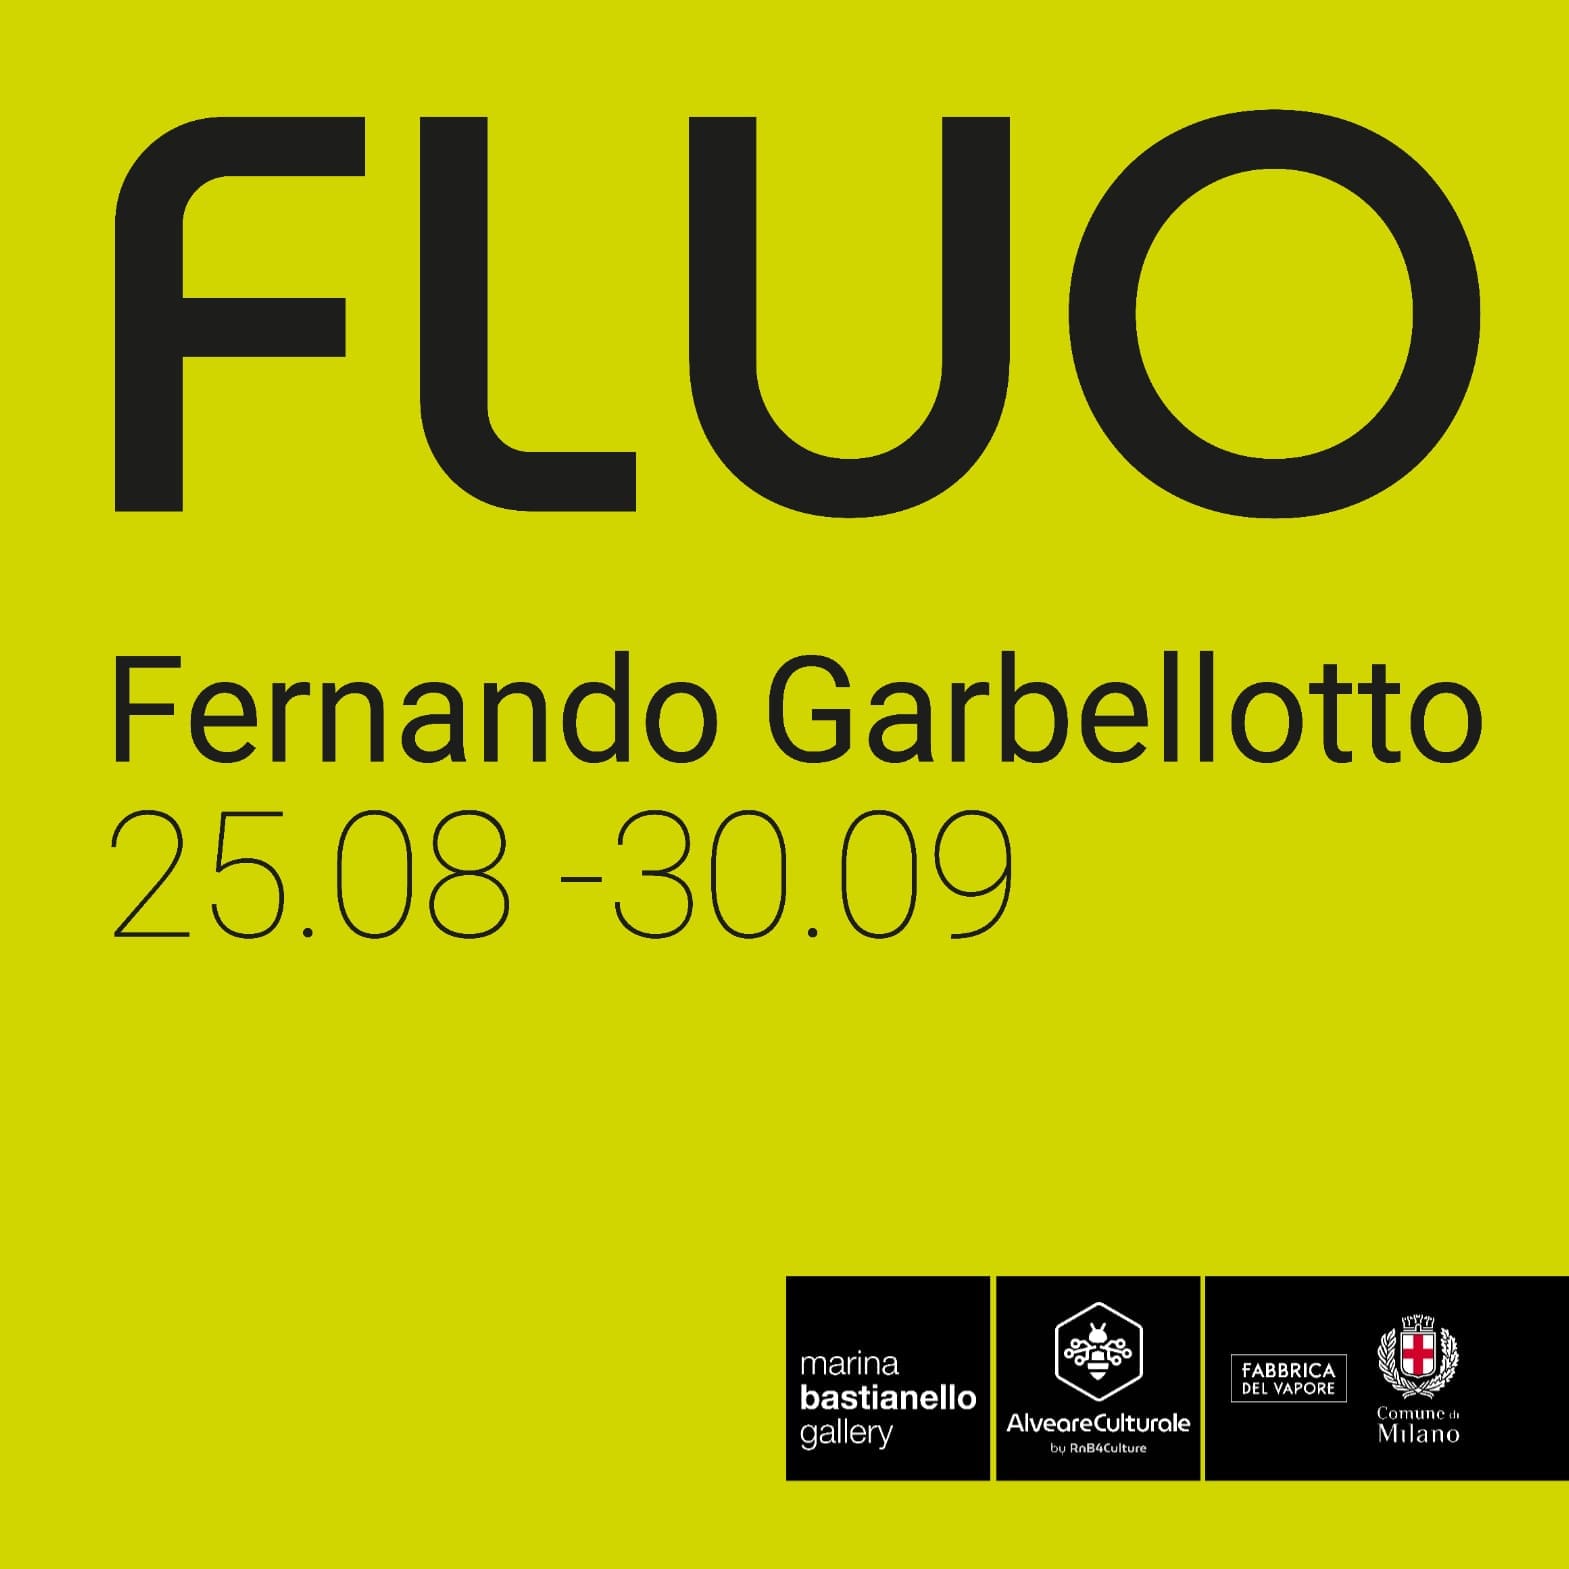 Scopri l'arte di Fernando Garbellotto. Dal 25/08 al 30/09/2023 Mostra 'Fluo' presso Fabbrica del vapore/Alveare culturale - Milano